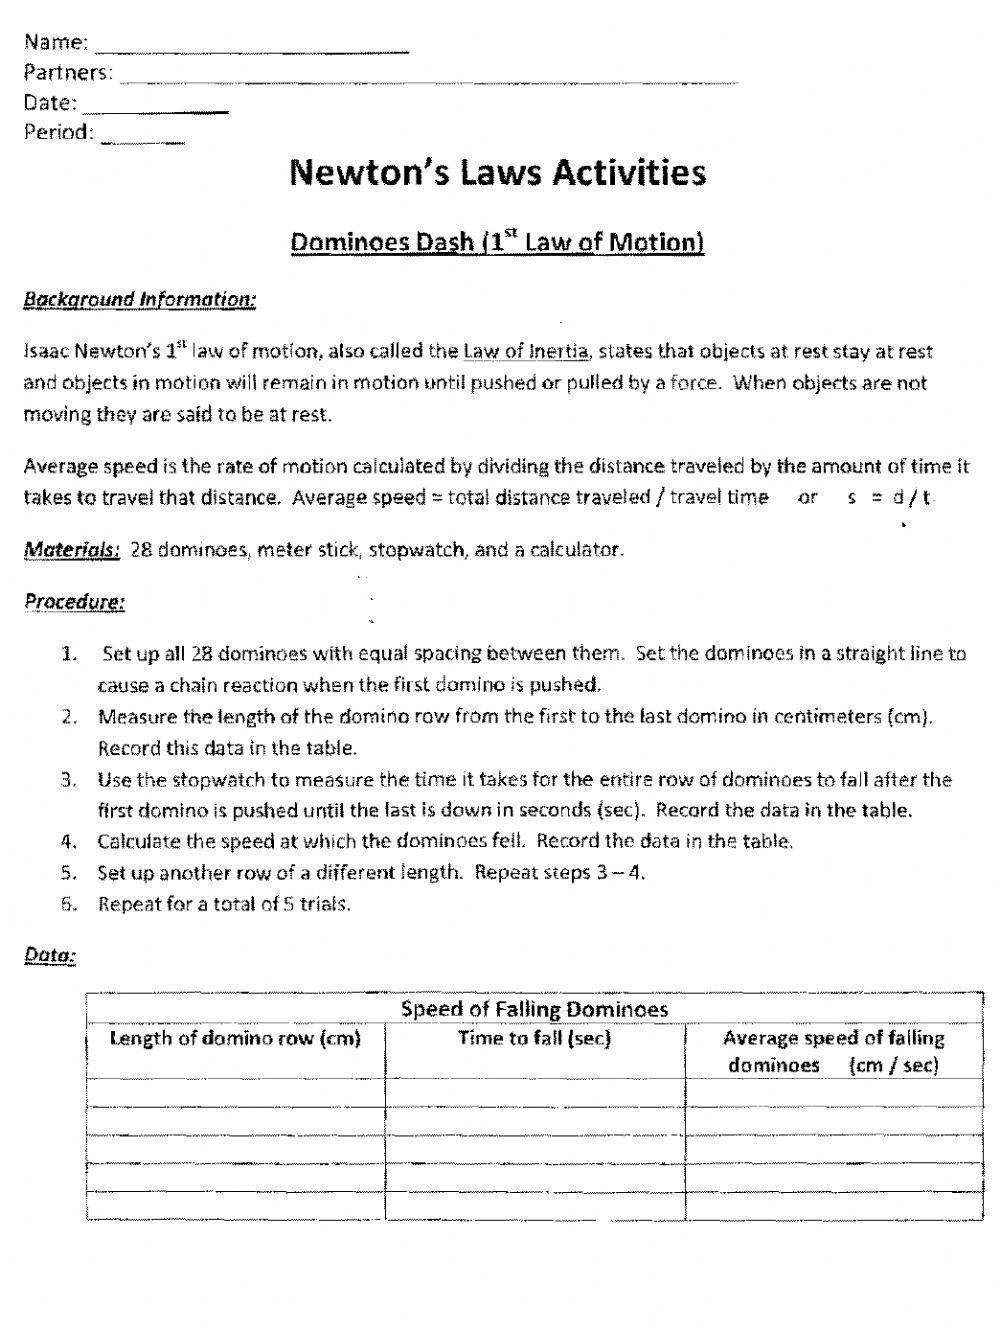 Newtons activities